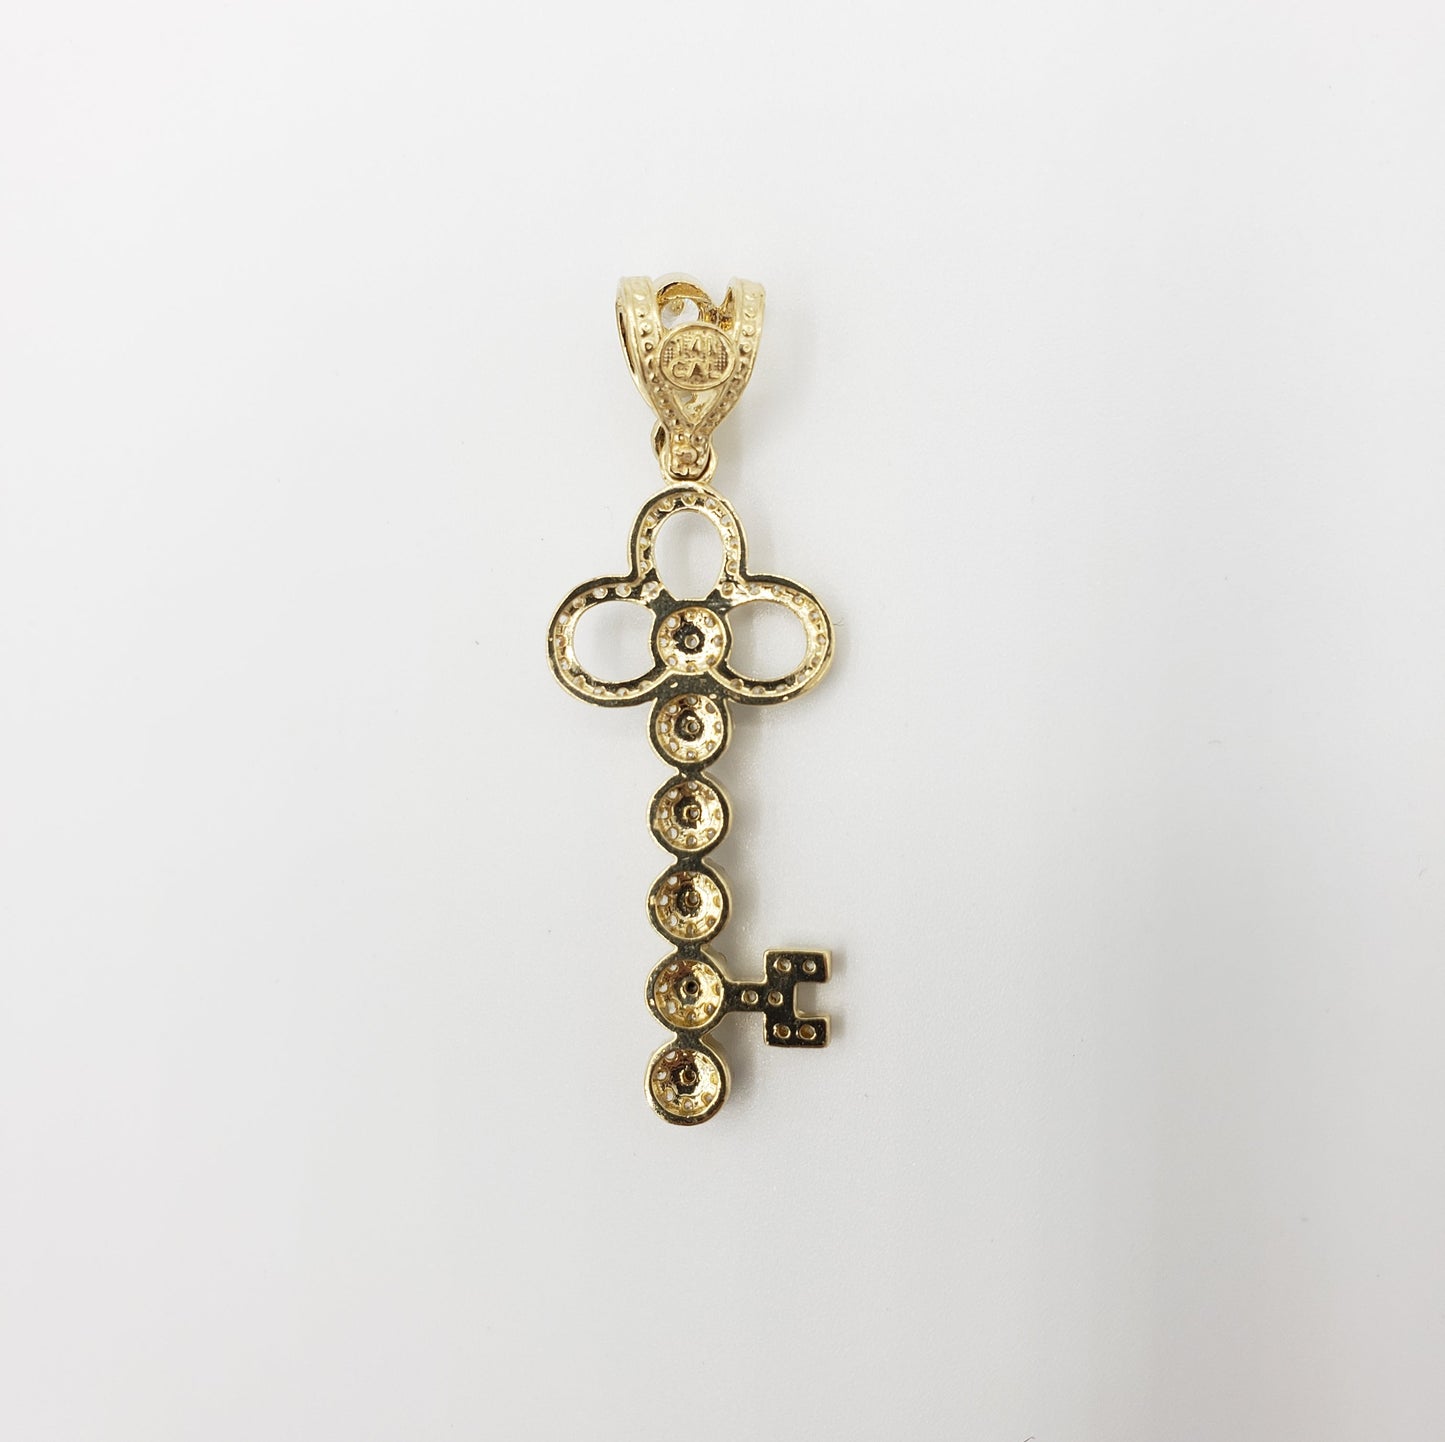 14K Gold- Clover Key Pendant